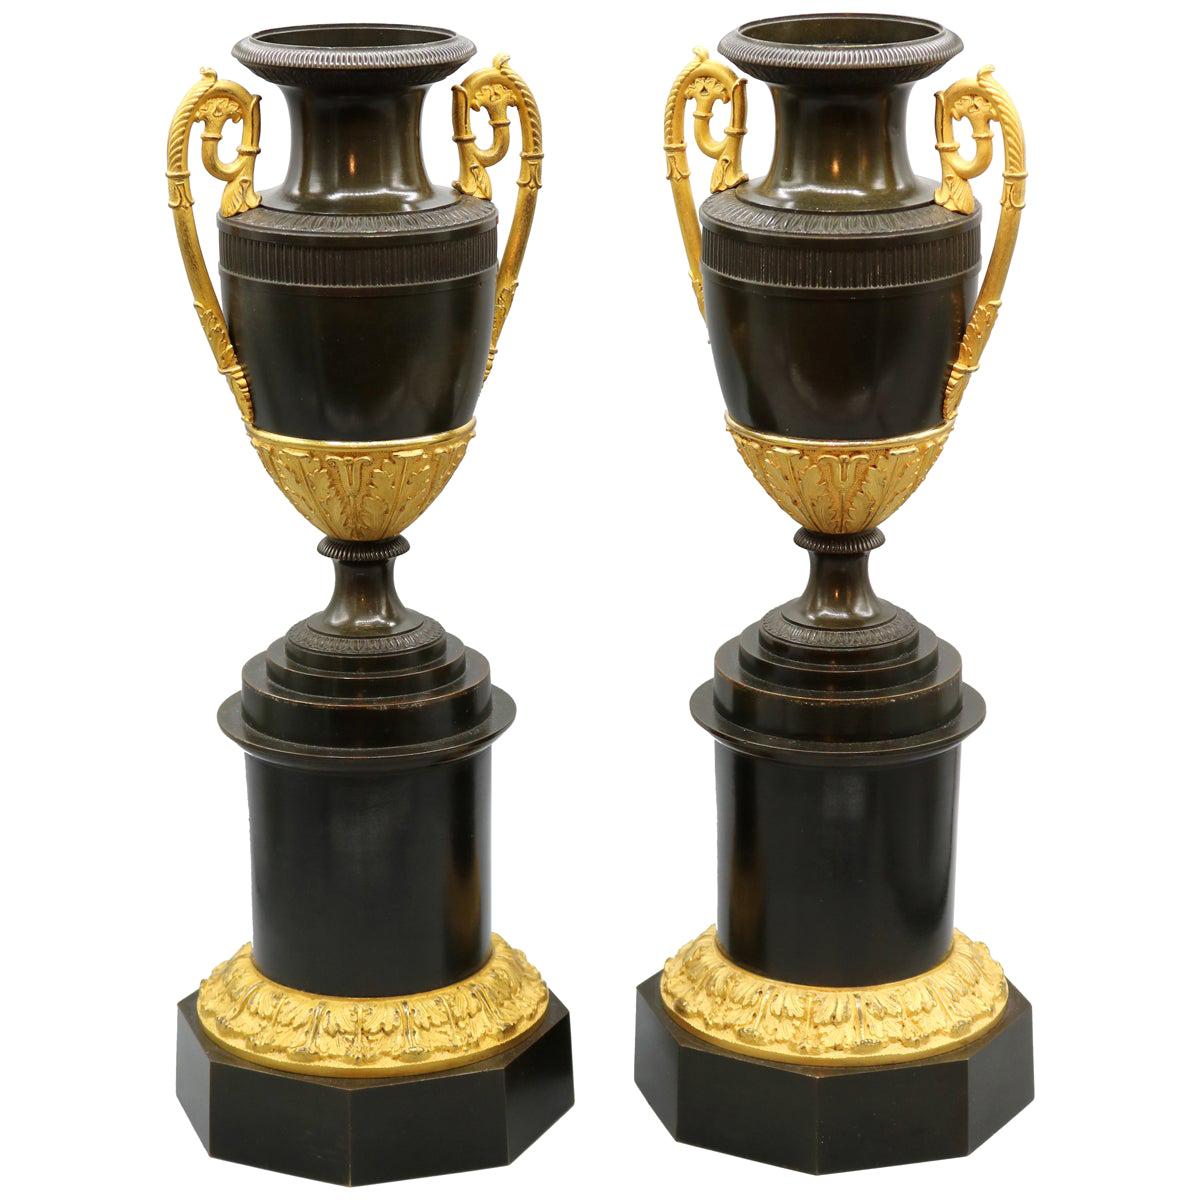 Paire de vases classiques en  bronze et dorure du début du 19e siècle, période Régence